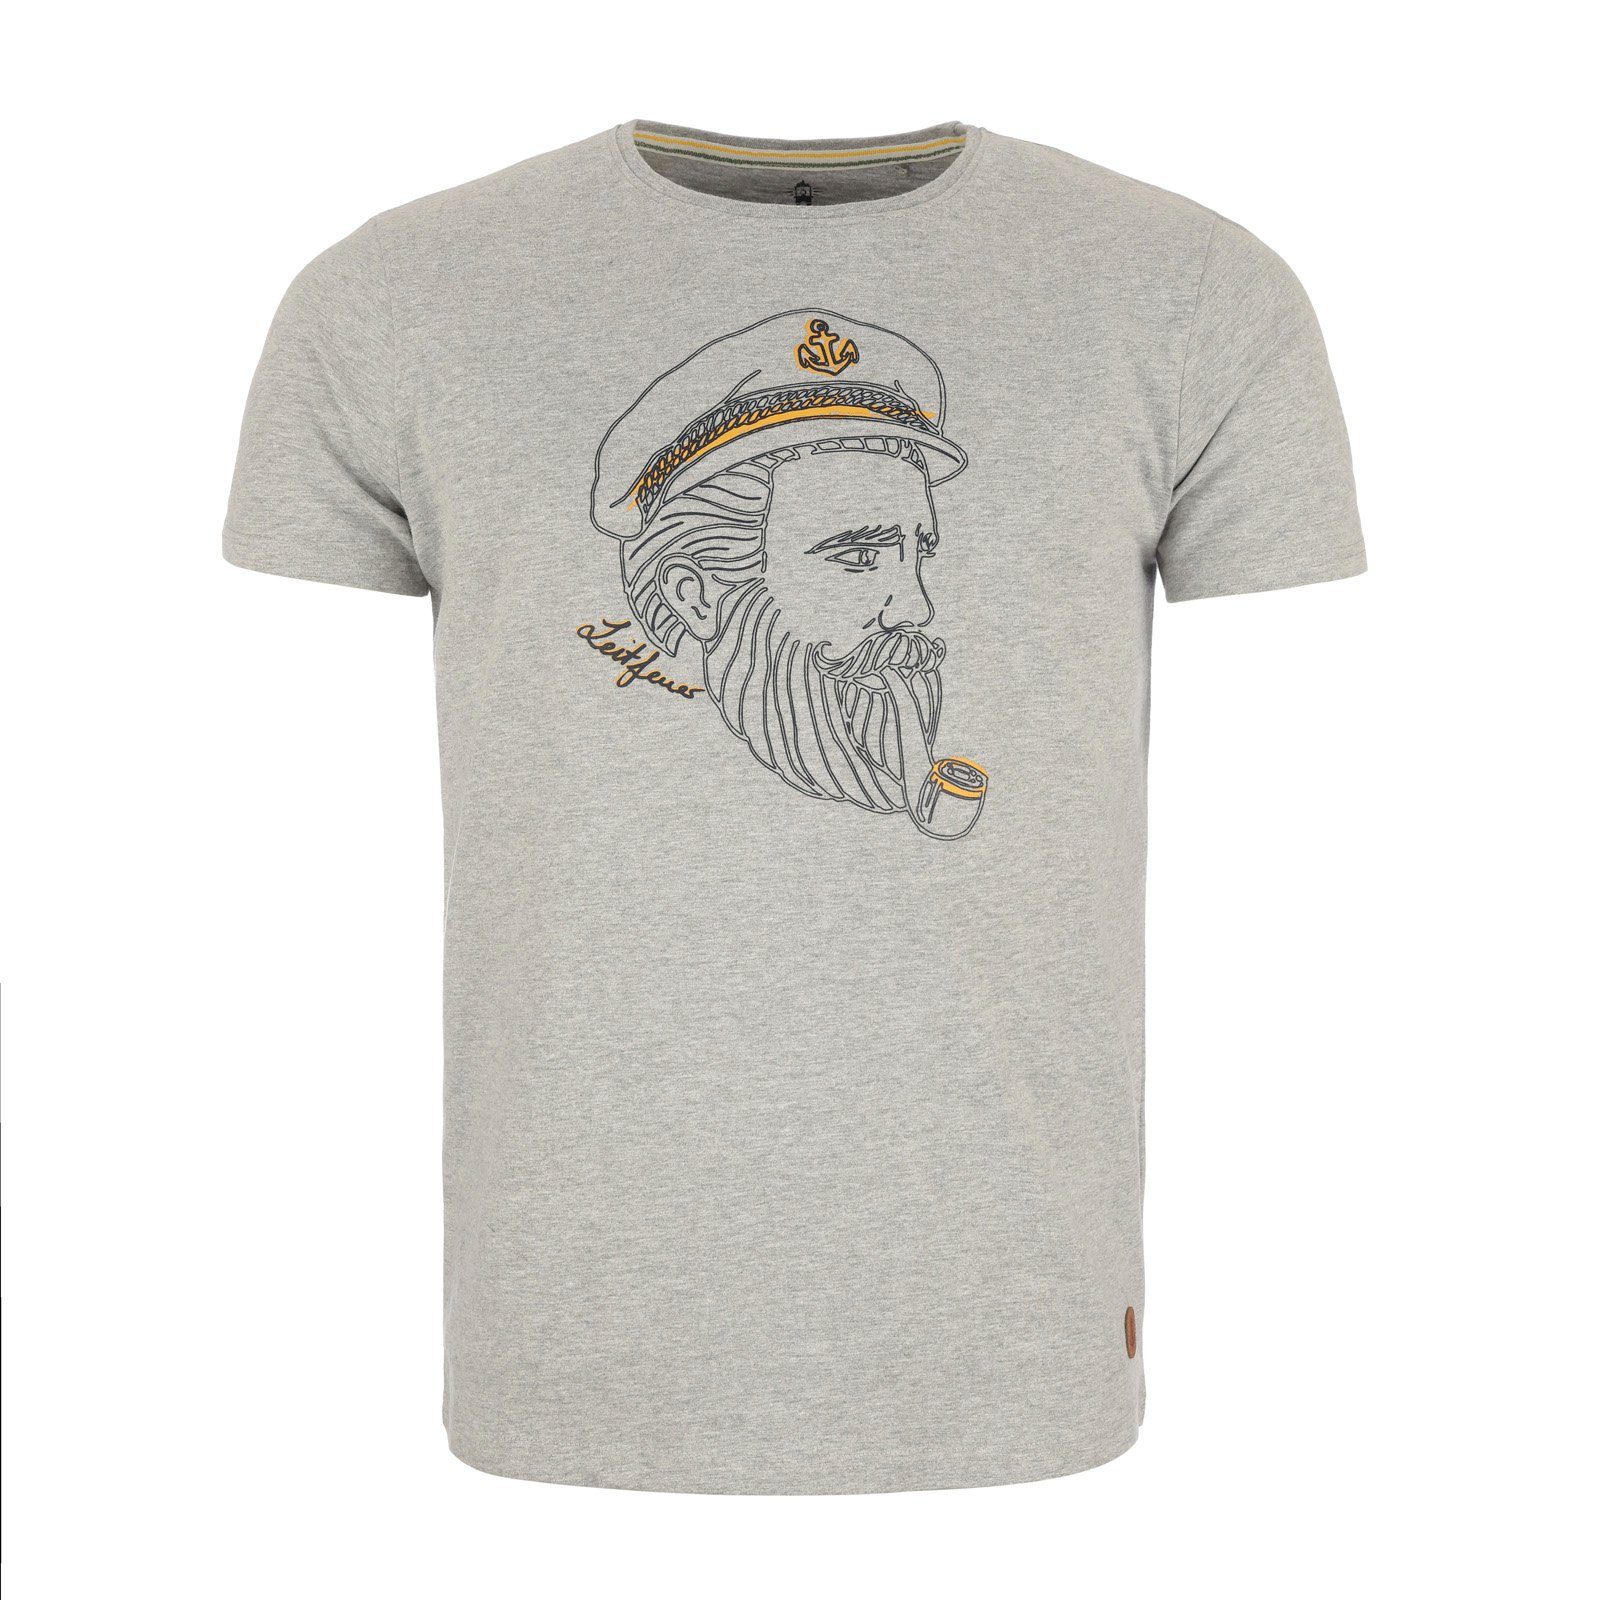 Leitfeuer T-Shirt Herren 1/2 Arm Shirt Rundhals mit Kapitän-Seemann-Print samtig weich hellgrau